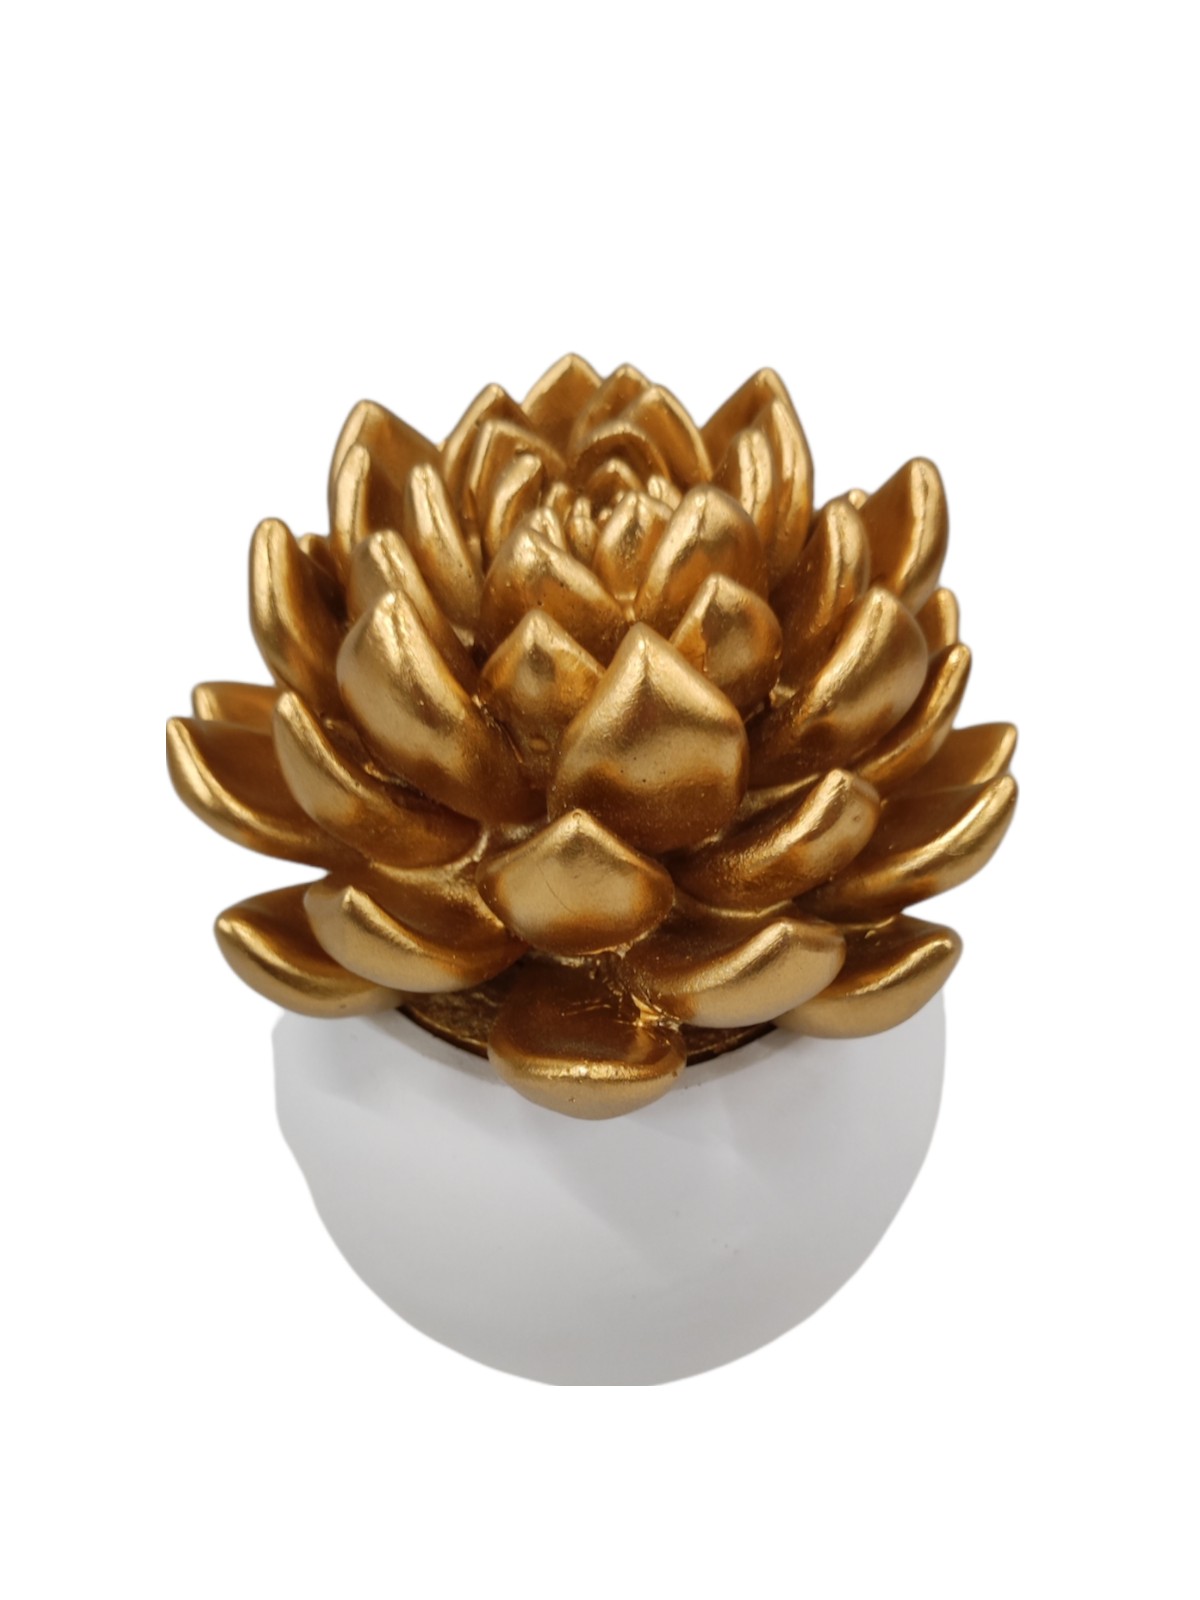 Flowerpot with succulent ceramic